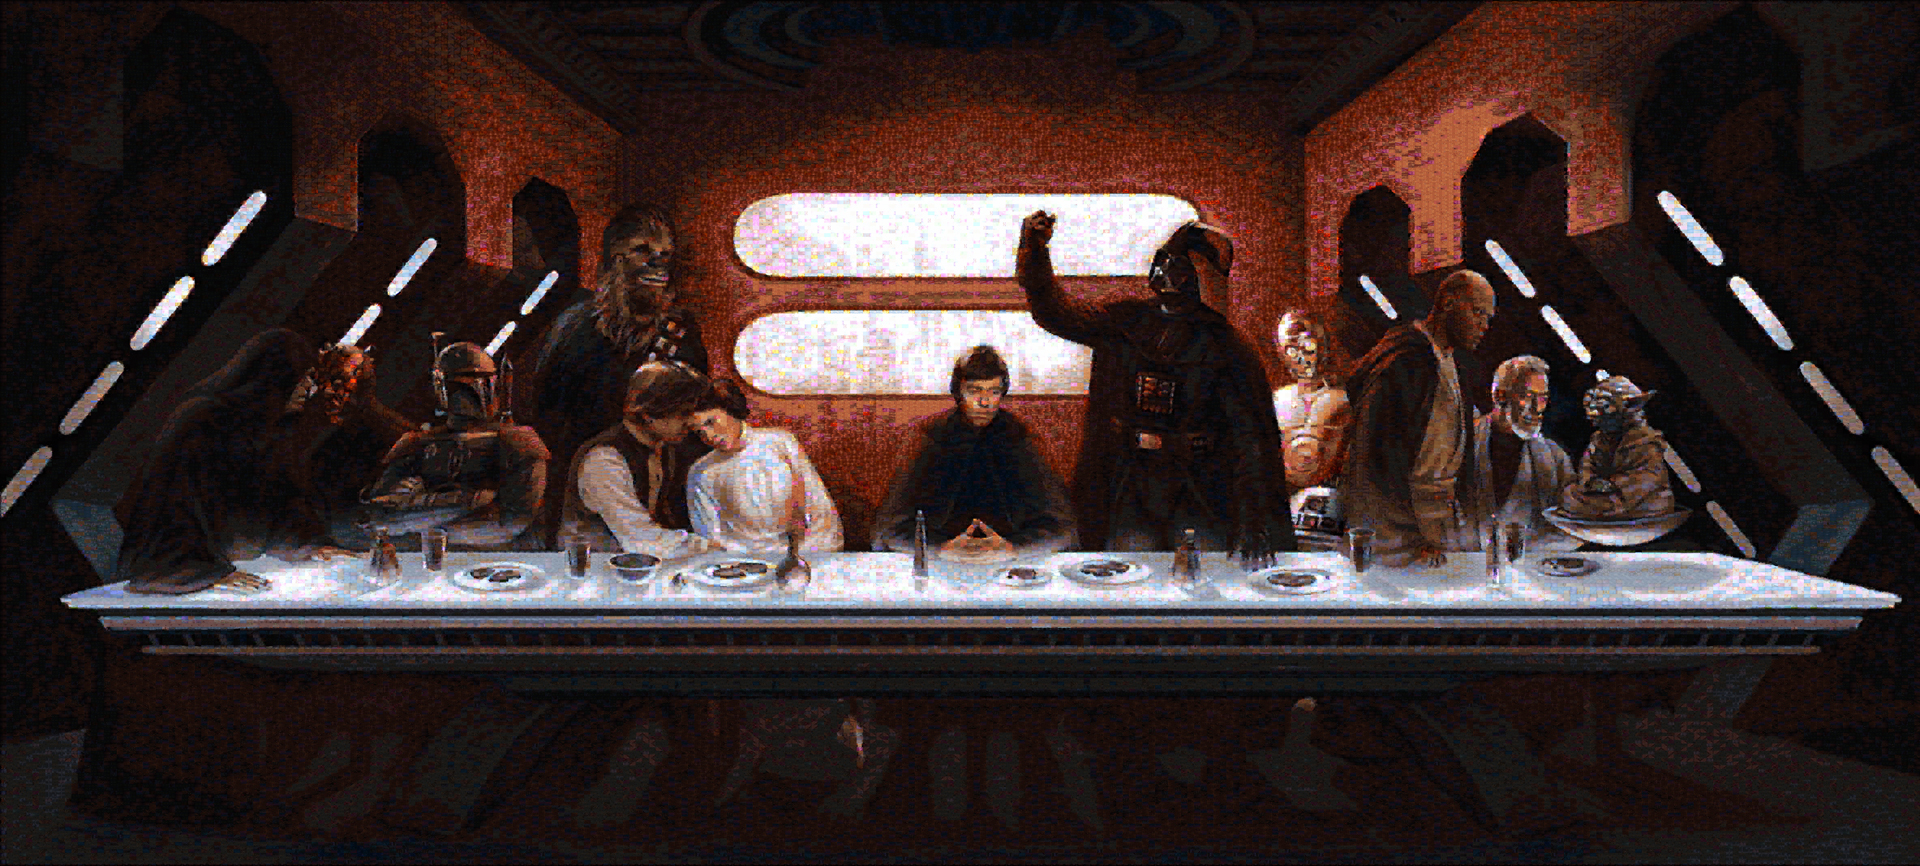 Star Wars last dinner